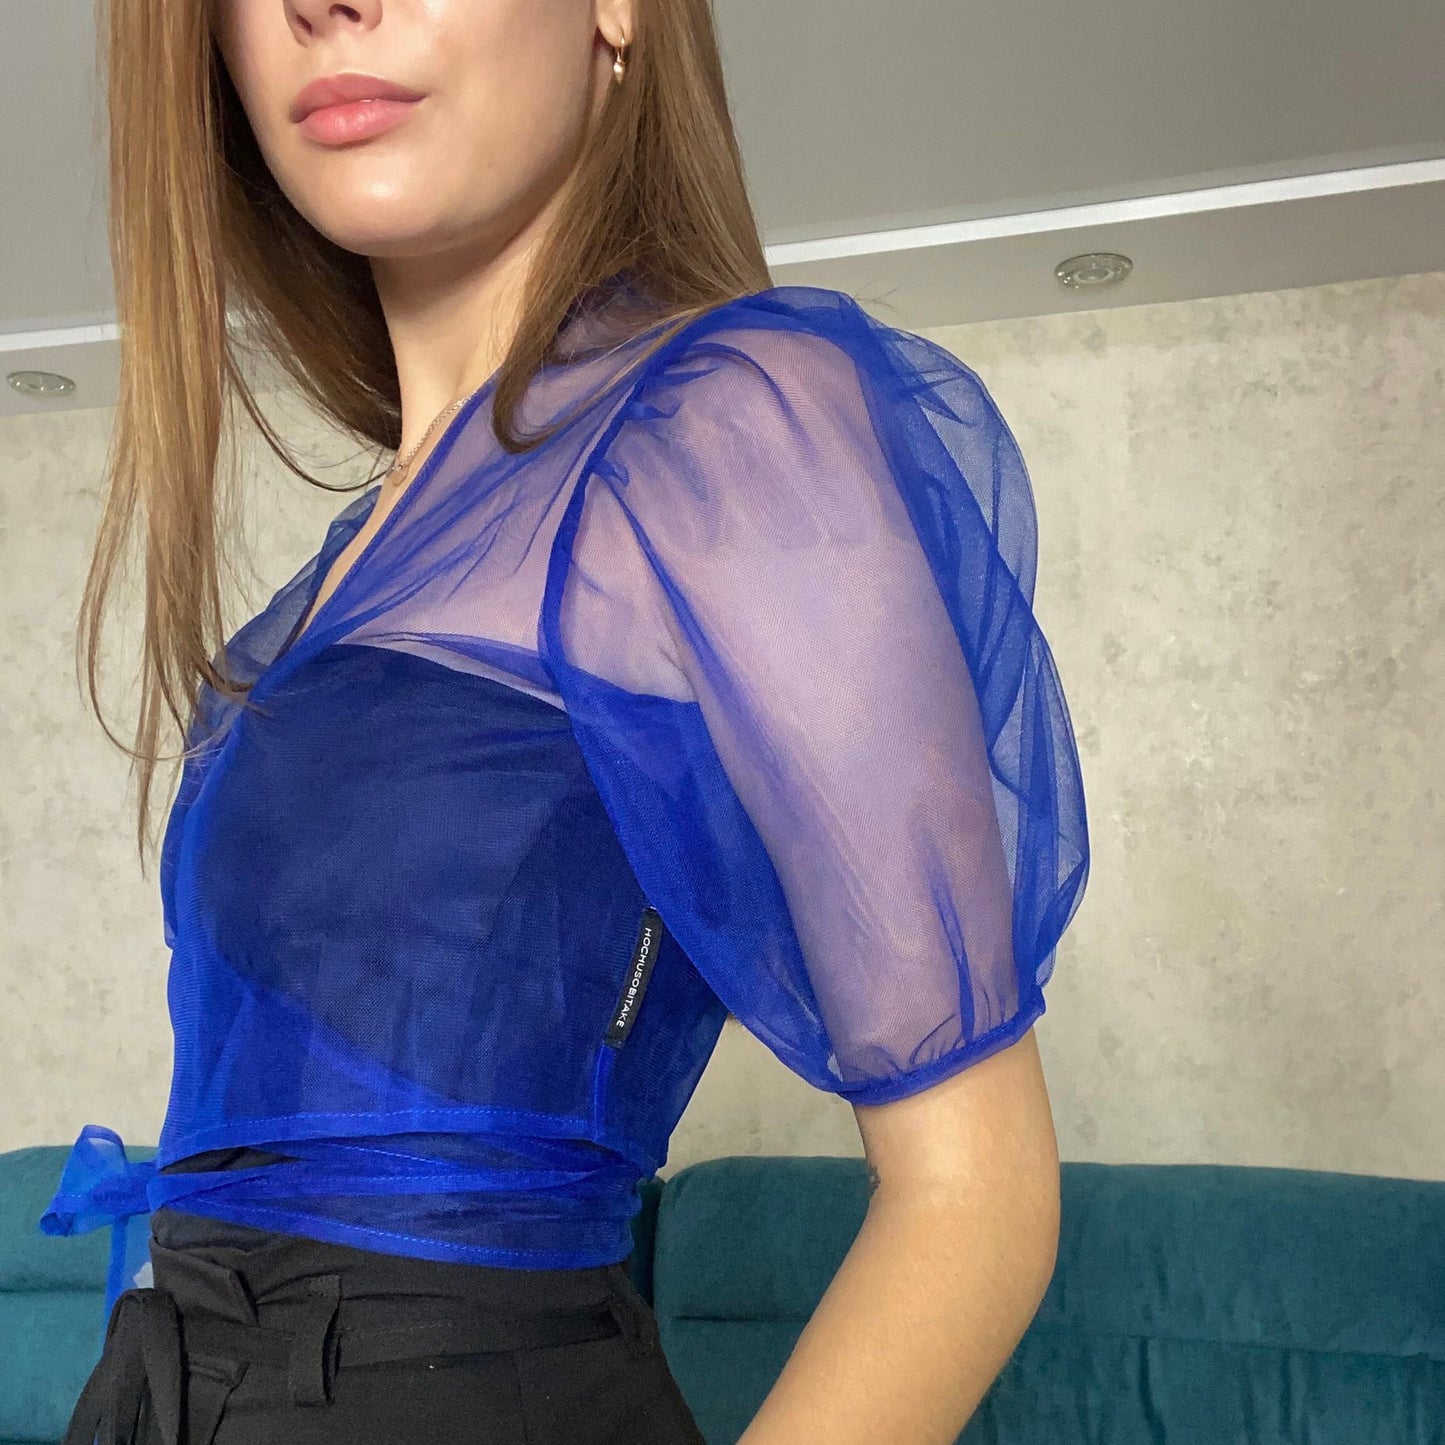 Transparent blue blouse with flounces